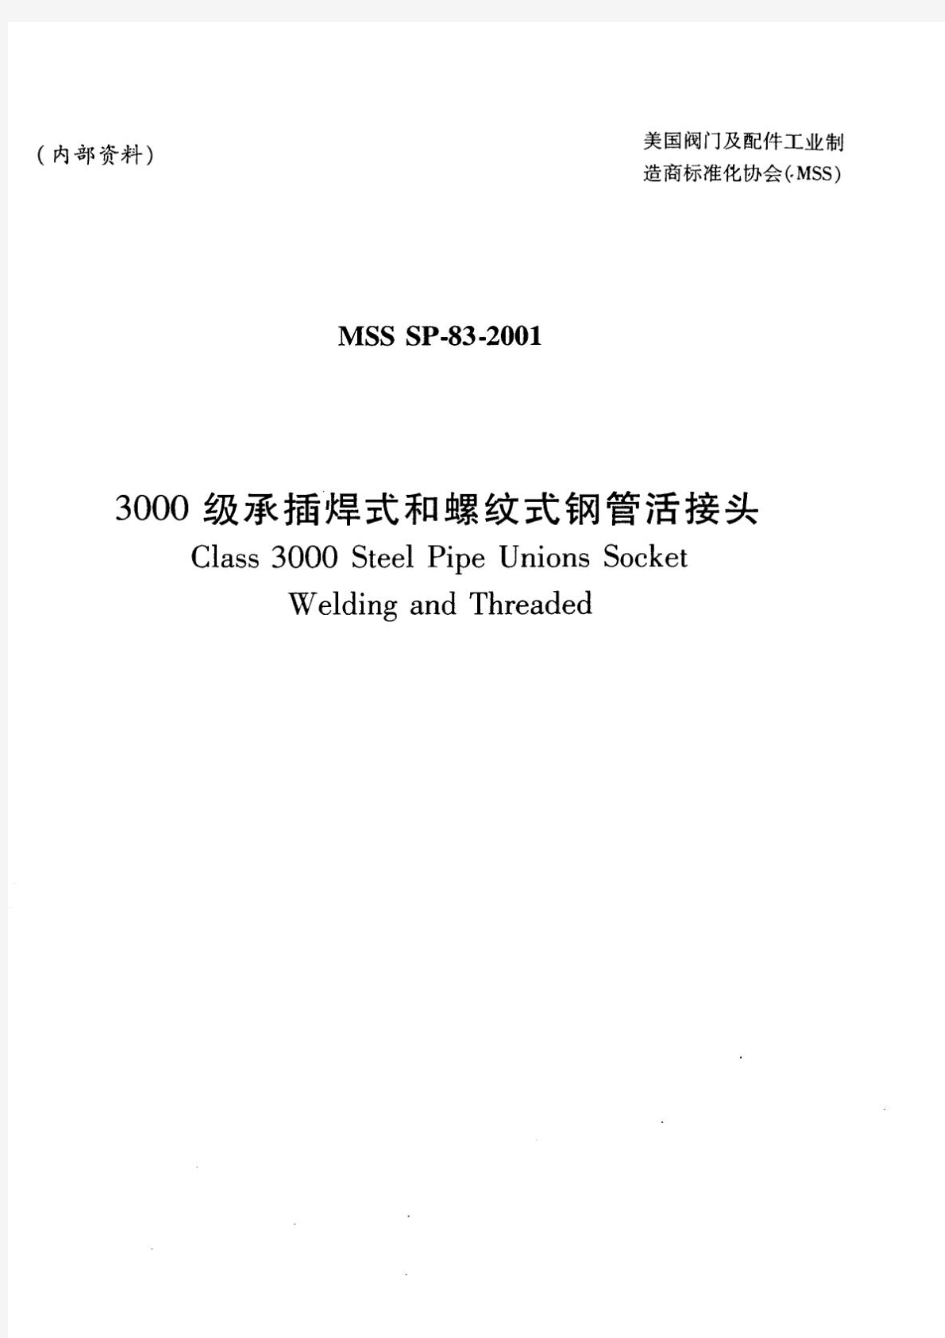 MSSSP-83-2001活接头中文版